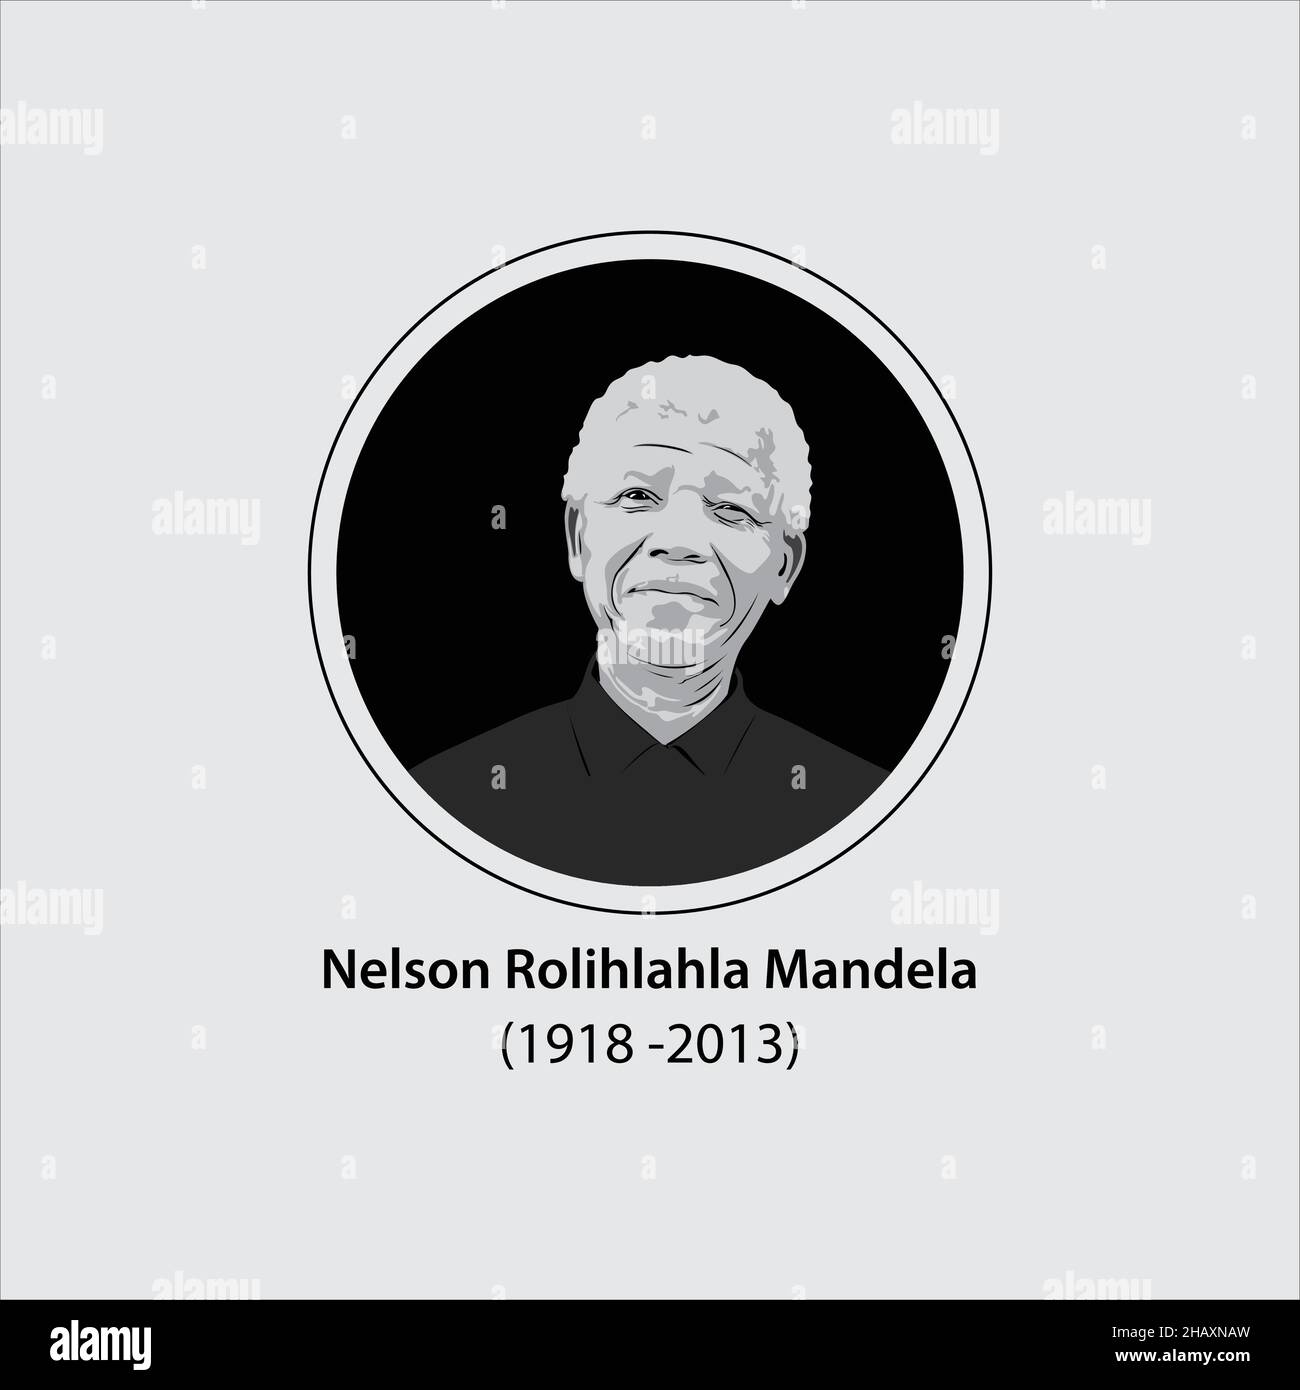 Nelson Mandela è stato un leader politico e rivoluzionario anti-apartheid sudafricano, ex presidente del Sudafrica. Illustrazione Vettoriale